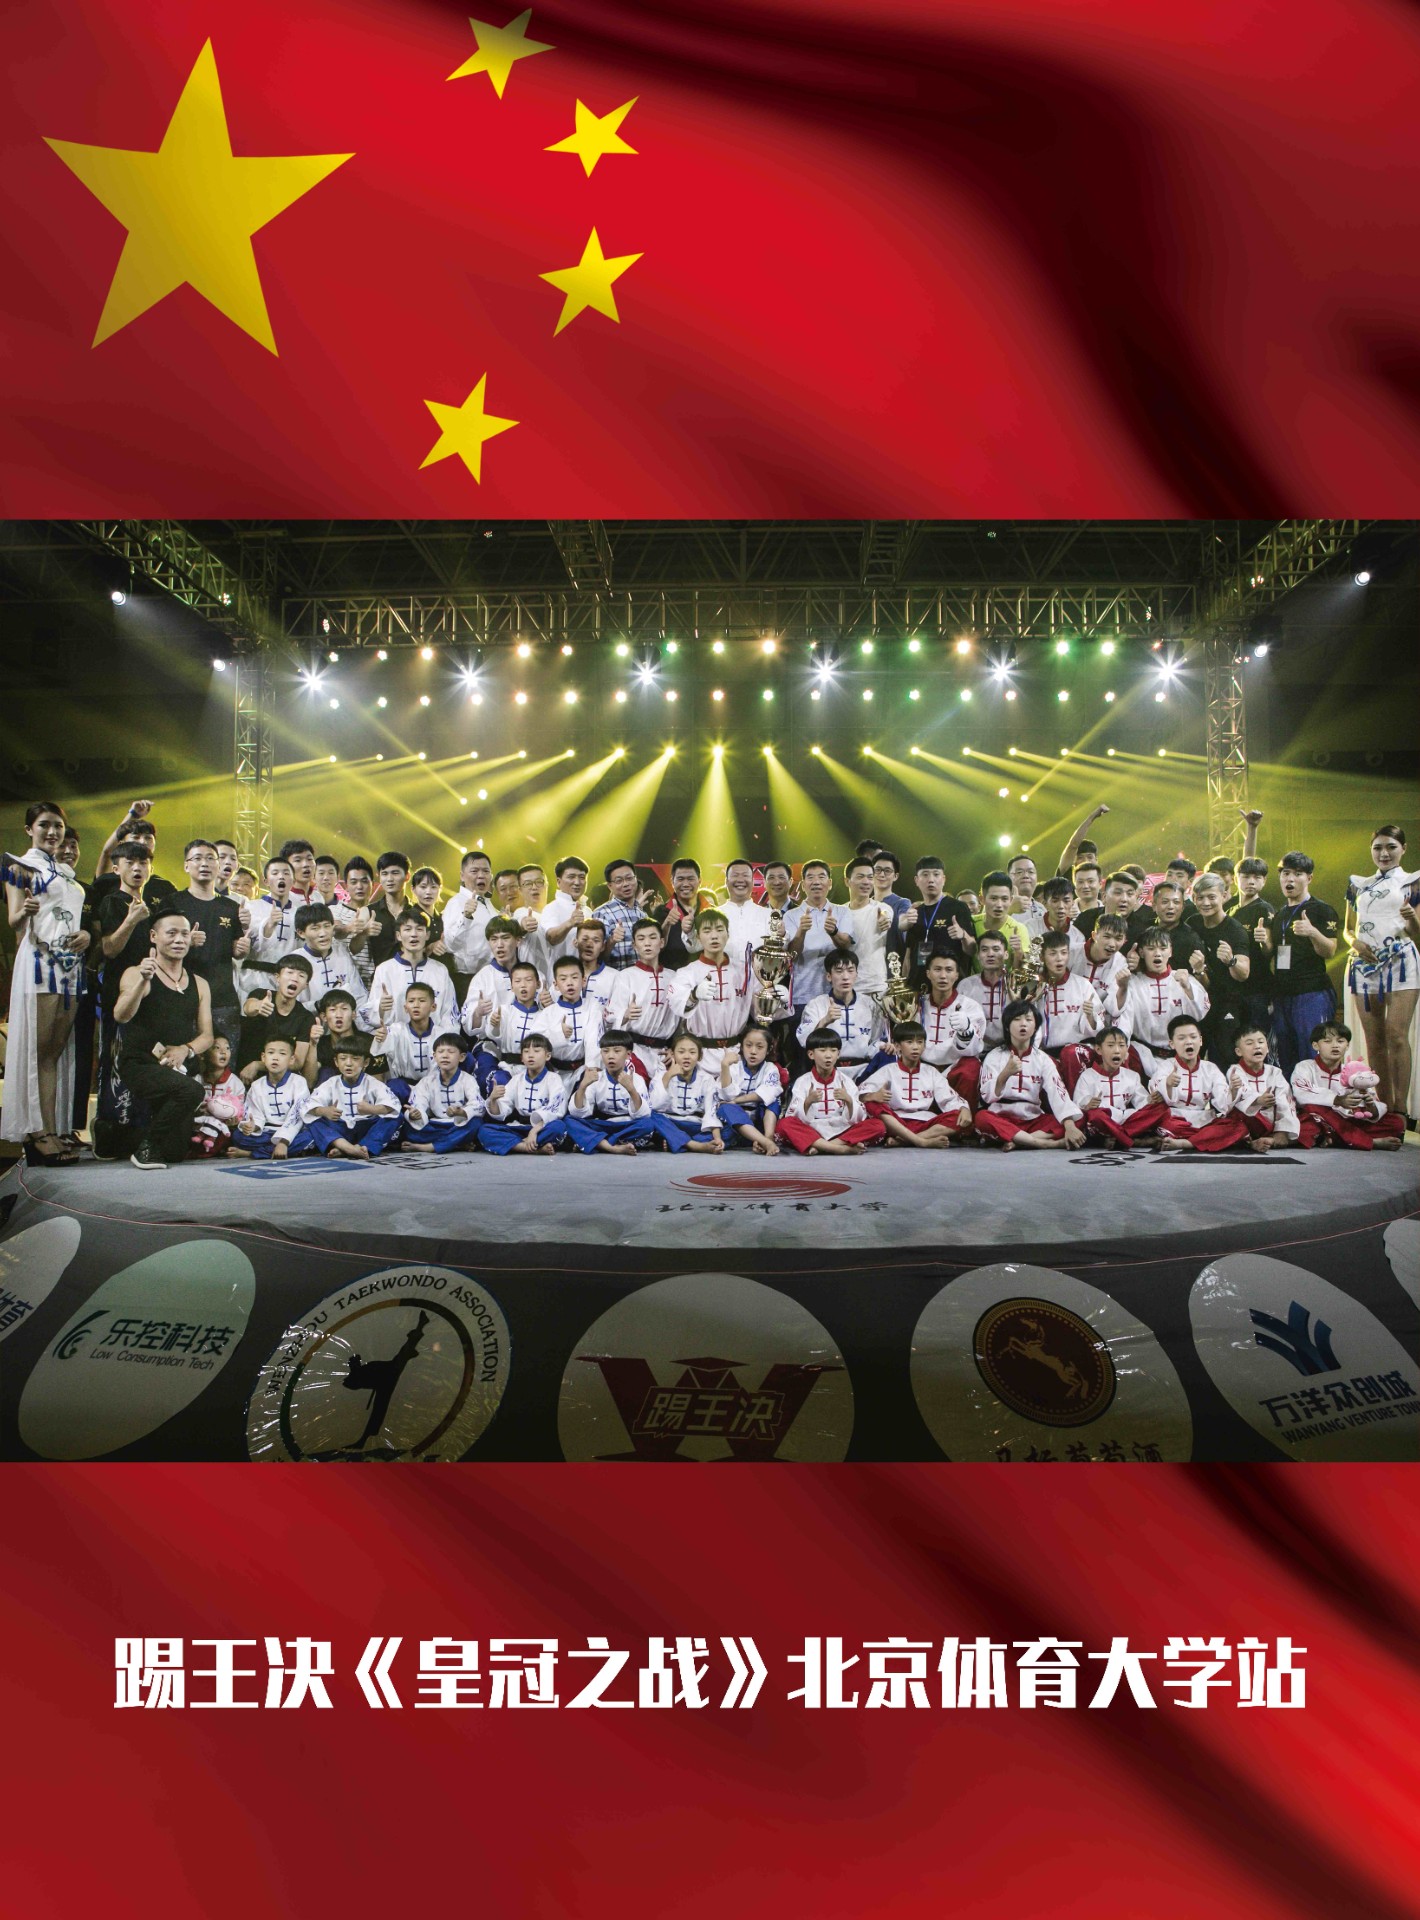 踢王决《皇冠之战》北京体育大学站